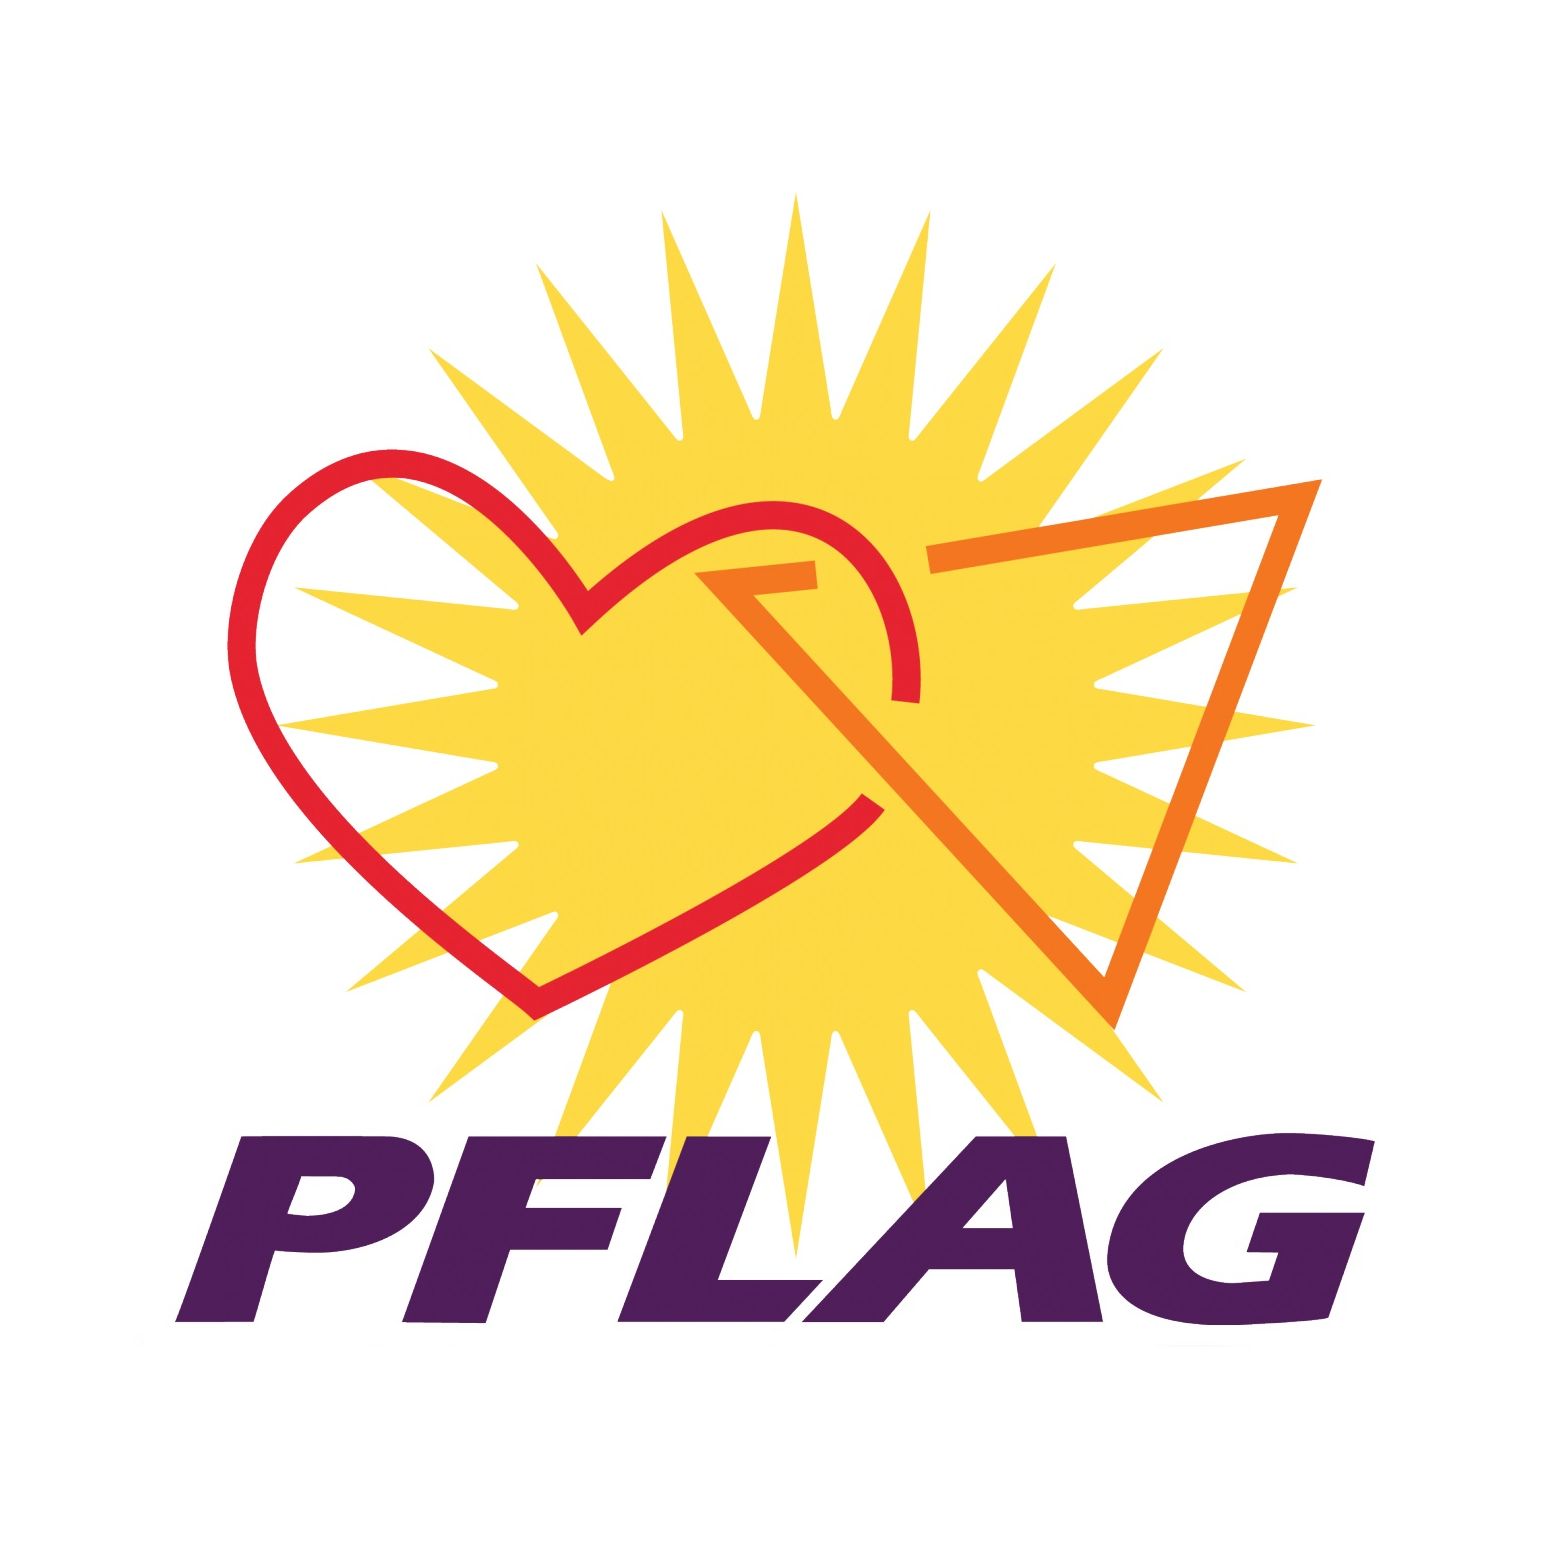 LGBTQ Organization in Miami Florida - PFLAG Sarasota